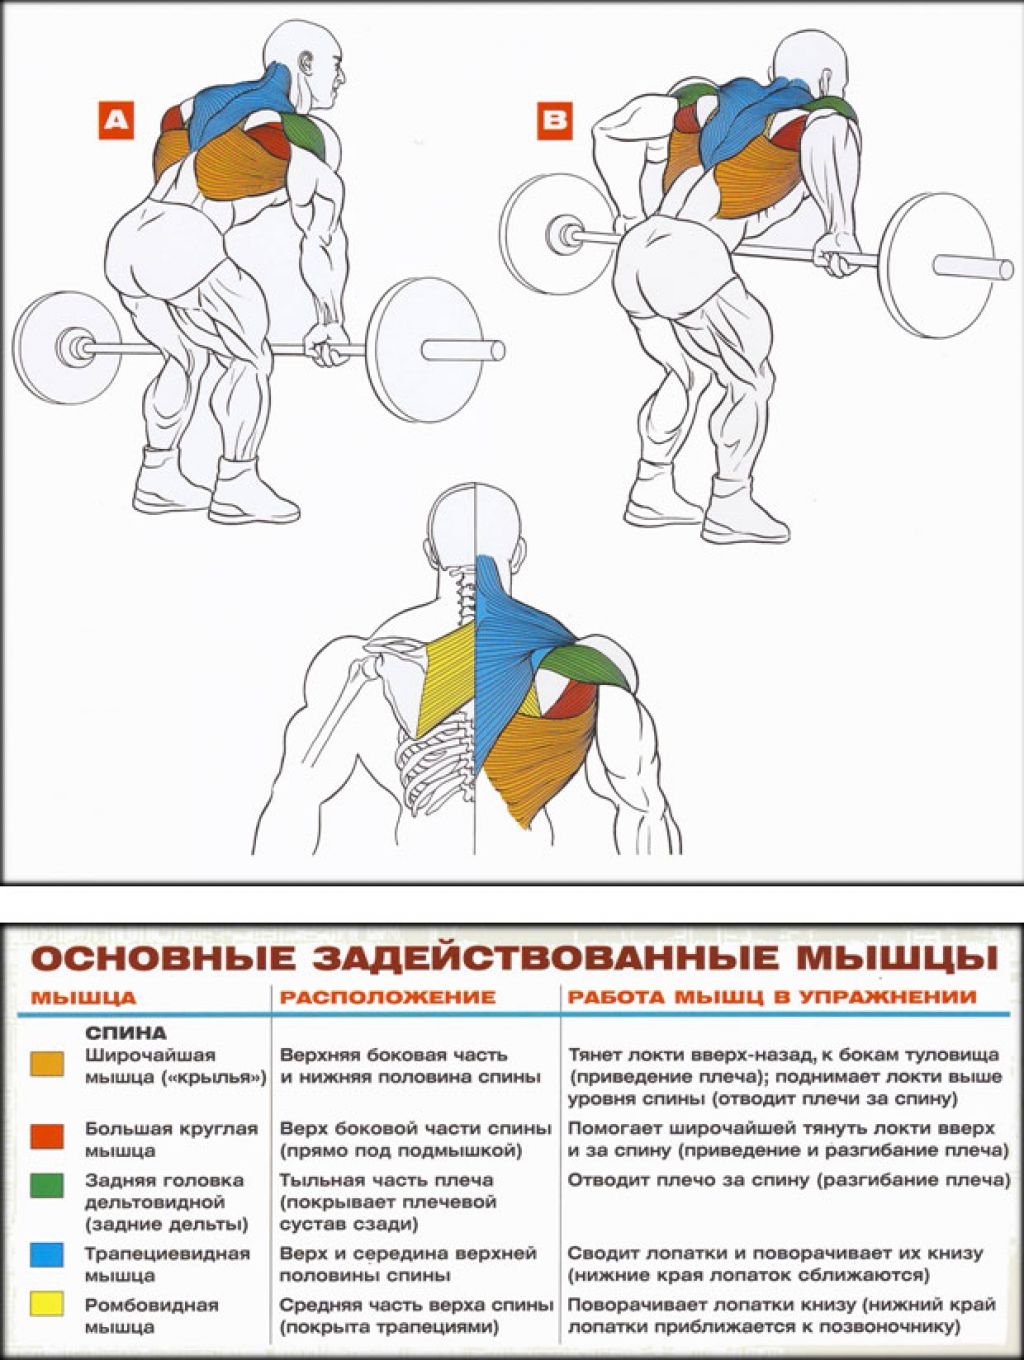 Штанга поясница. Прокачка мышц спины. Прокачка широчайших мышц спины. Упражнения для широчайших мышц в тренажерном зале. Накачать широчайшие мышцы спины штангой.